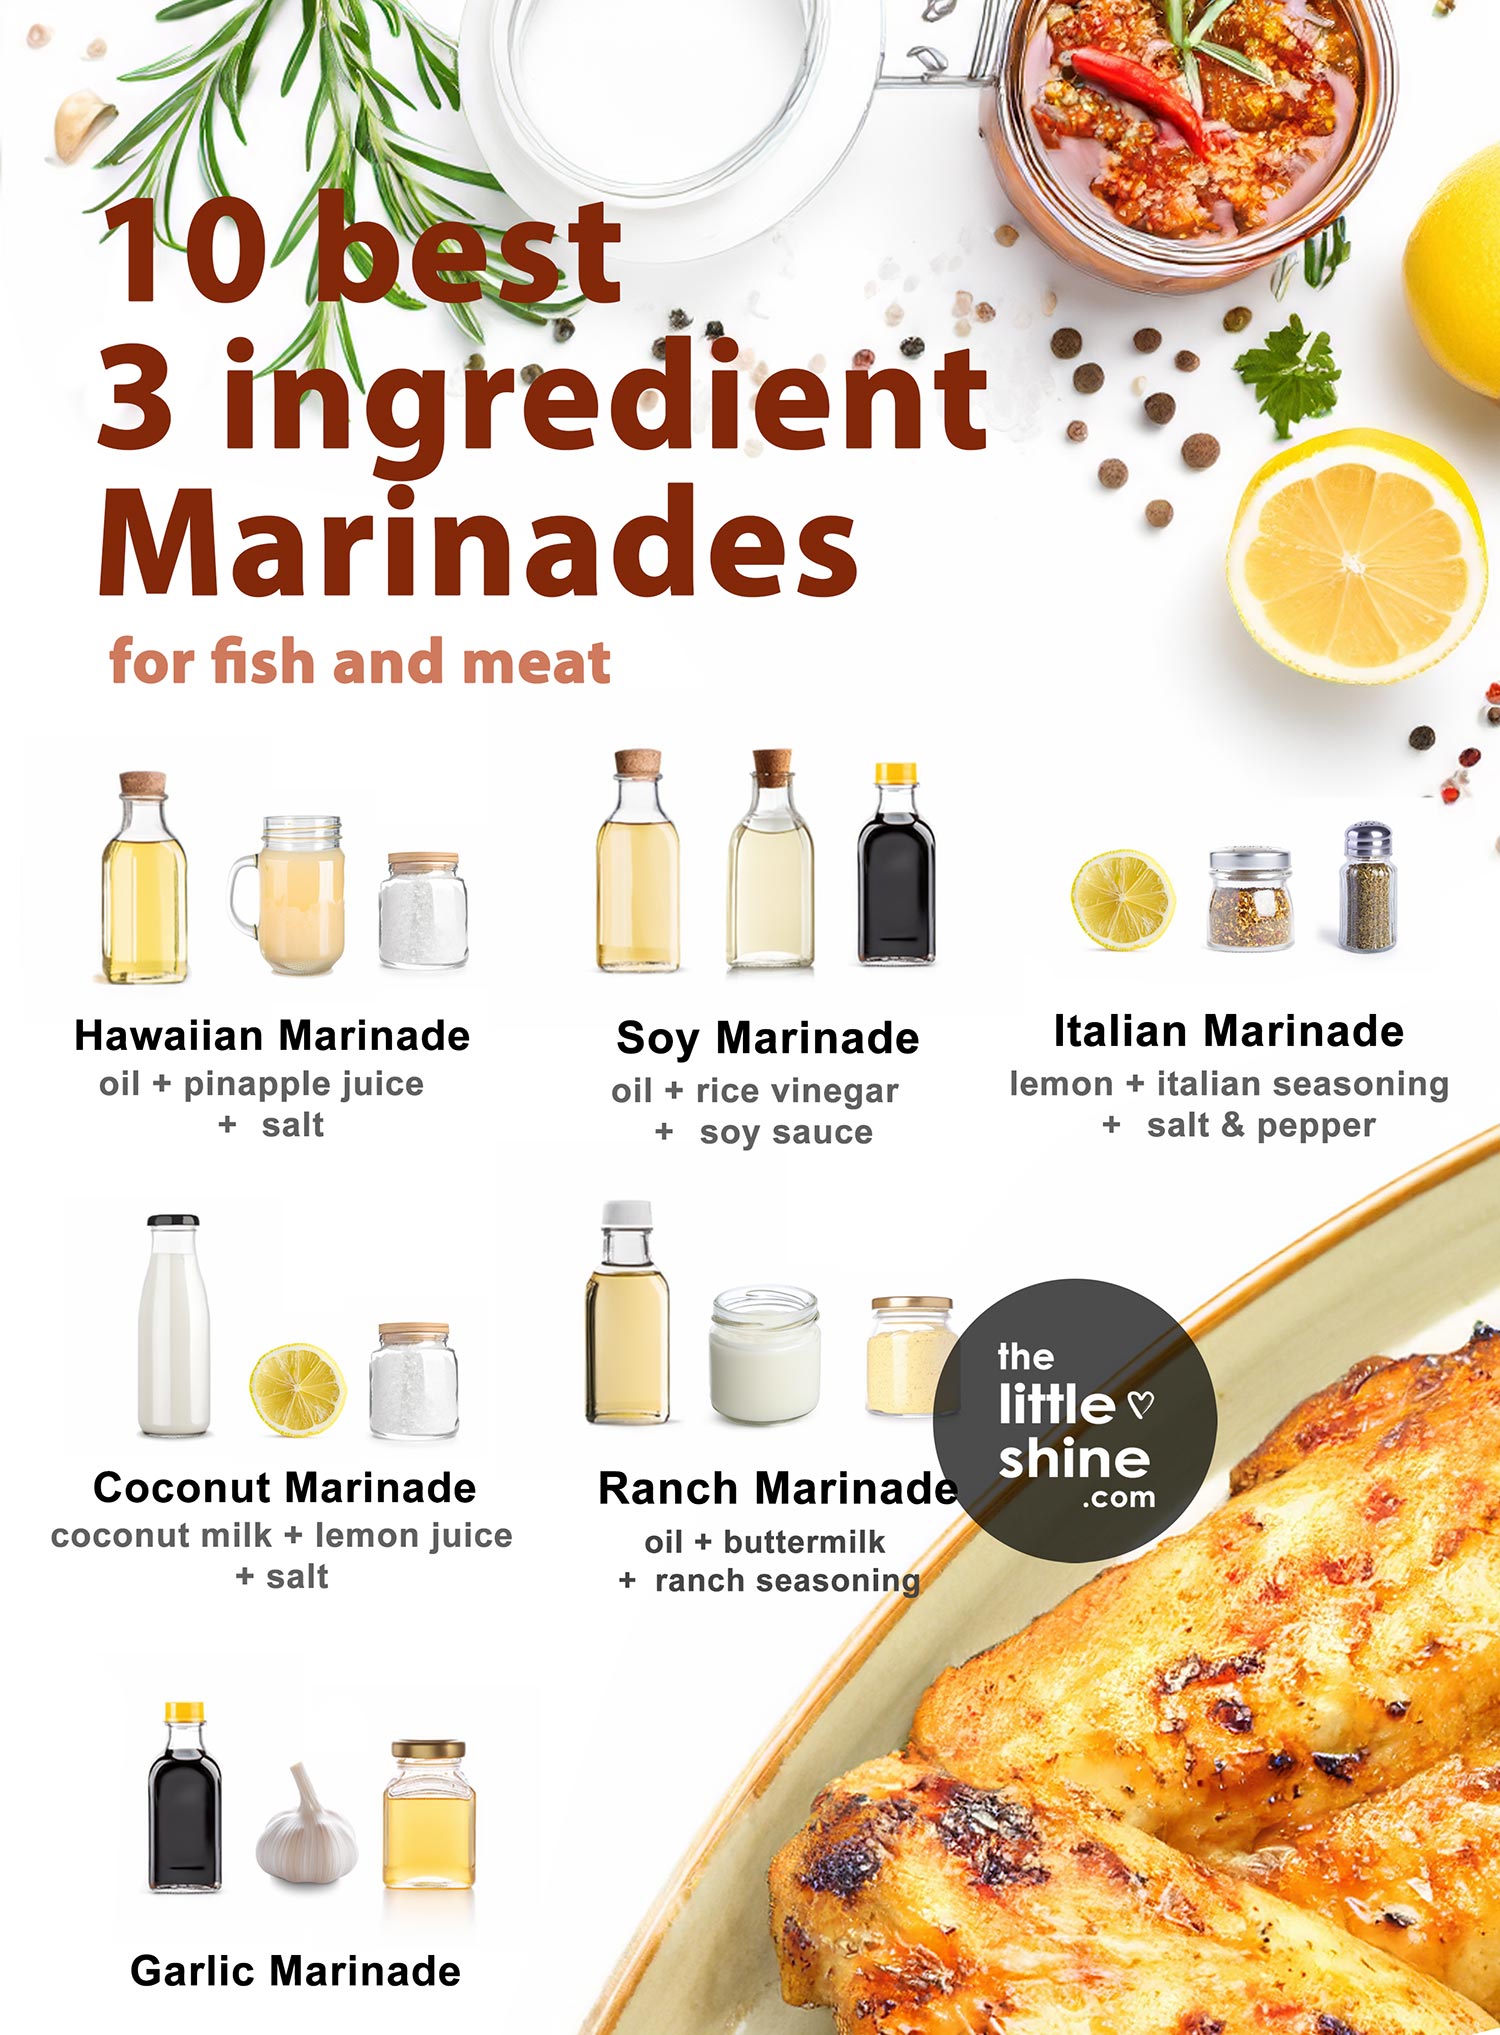 3 Ingredient Marinades